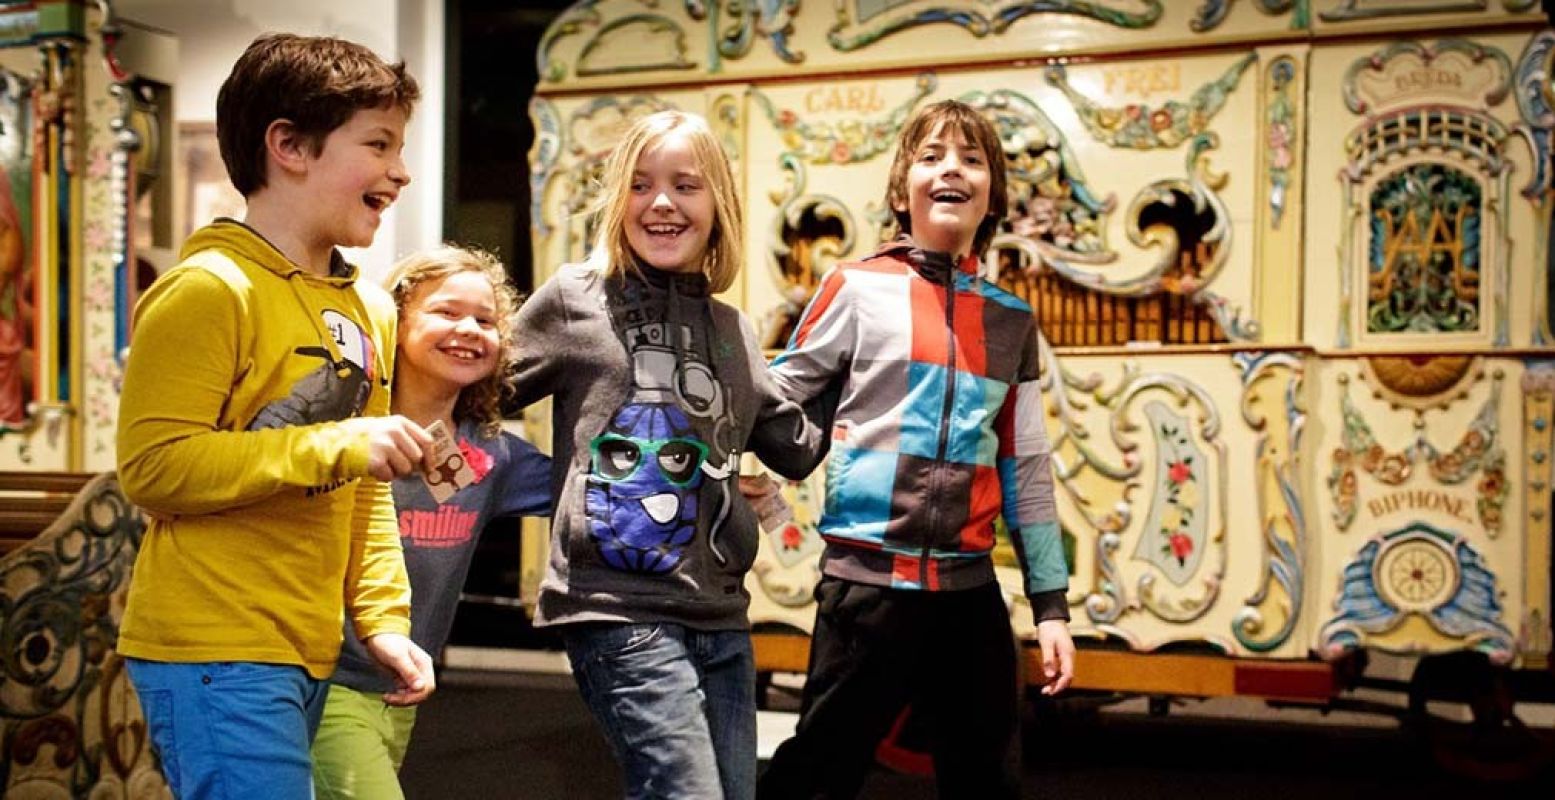 Basisschoolkinderen mogen tijdens de lerarenstaking gratis naar Museum Speelklok. Foto: Museum Speelklok.